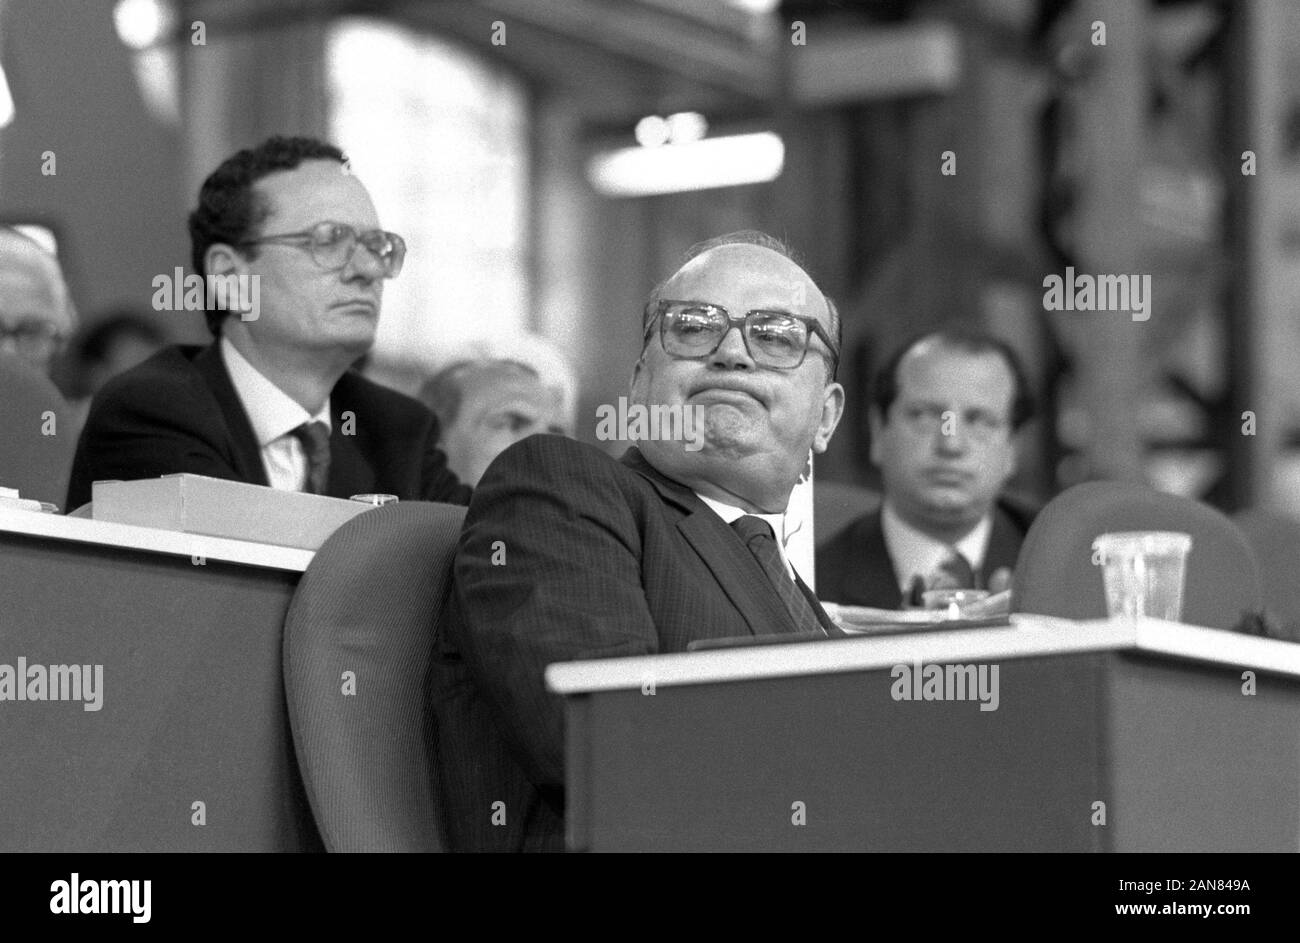 Milan (Italie), Bettino Craxi, secrétaire du PSI (Parti socialiste italien) au 45ème congrès du PSI (mai 1989) Banque D'Images